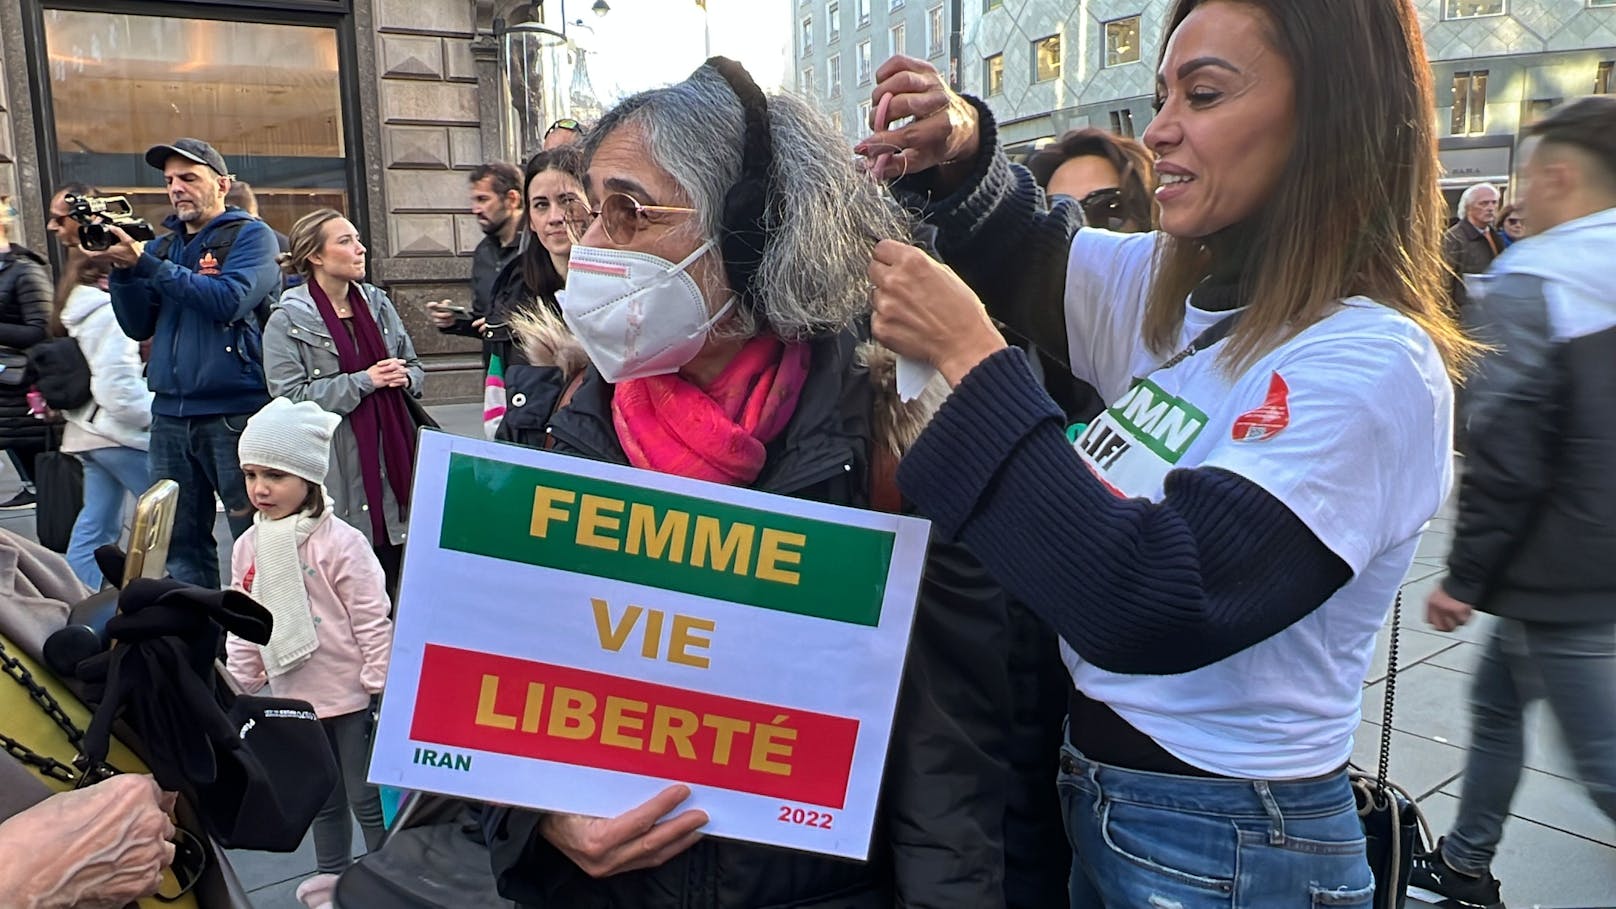 Am Samstagnachmittag fand mitten in der Wiener City am Stephansplatz eine Kundgebung für Frauen im Iran statt.